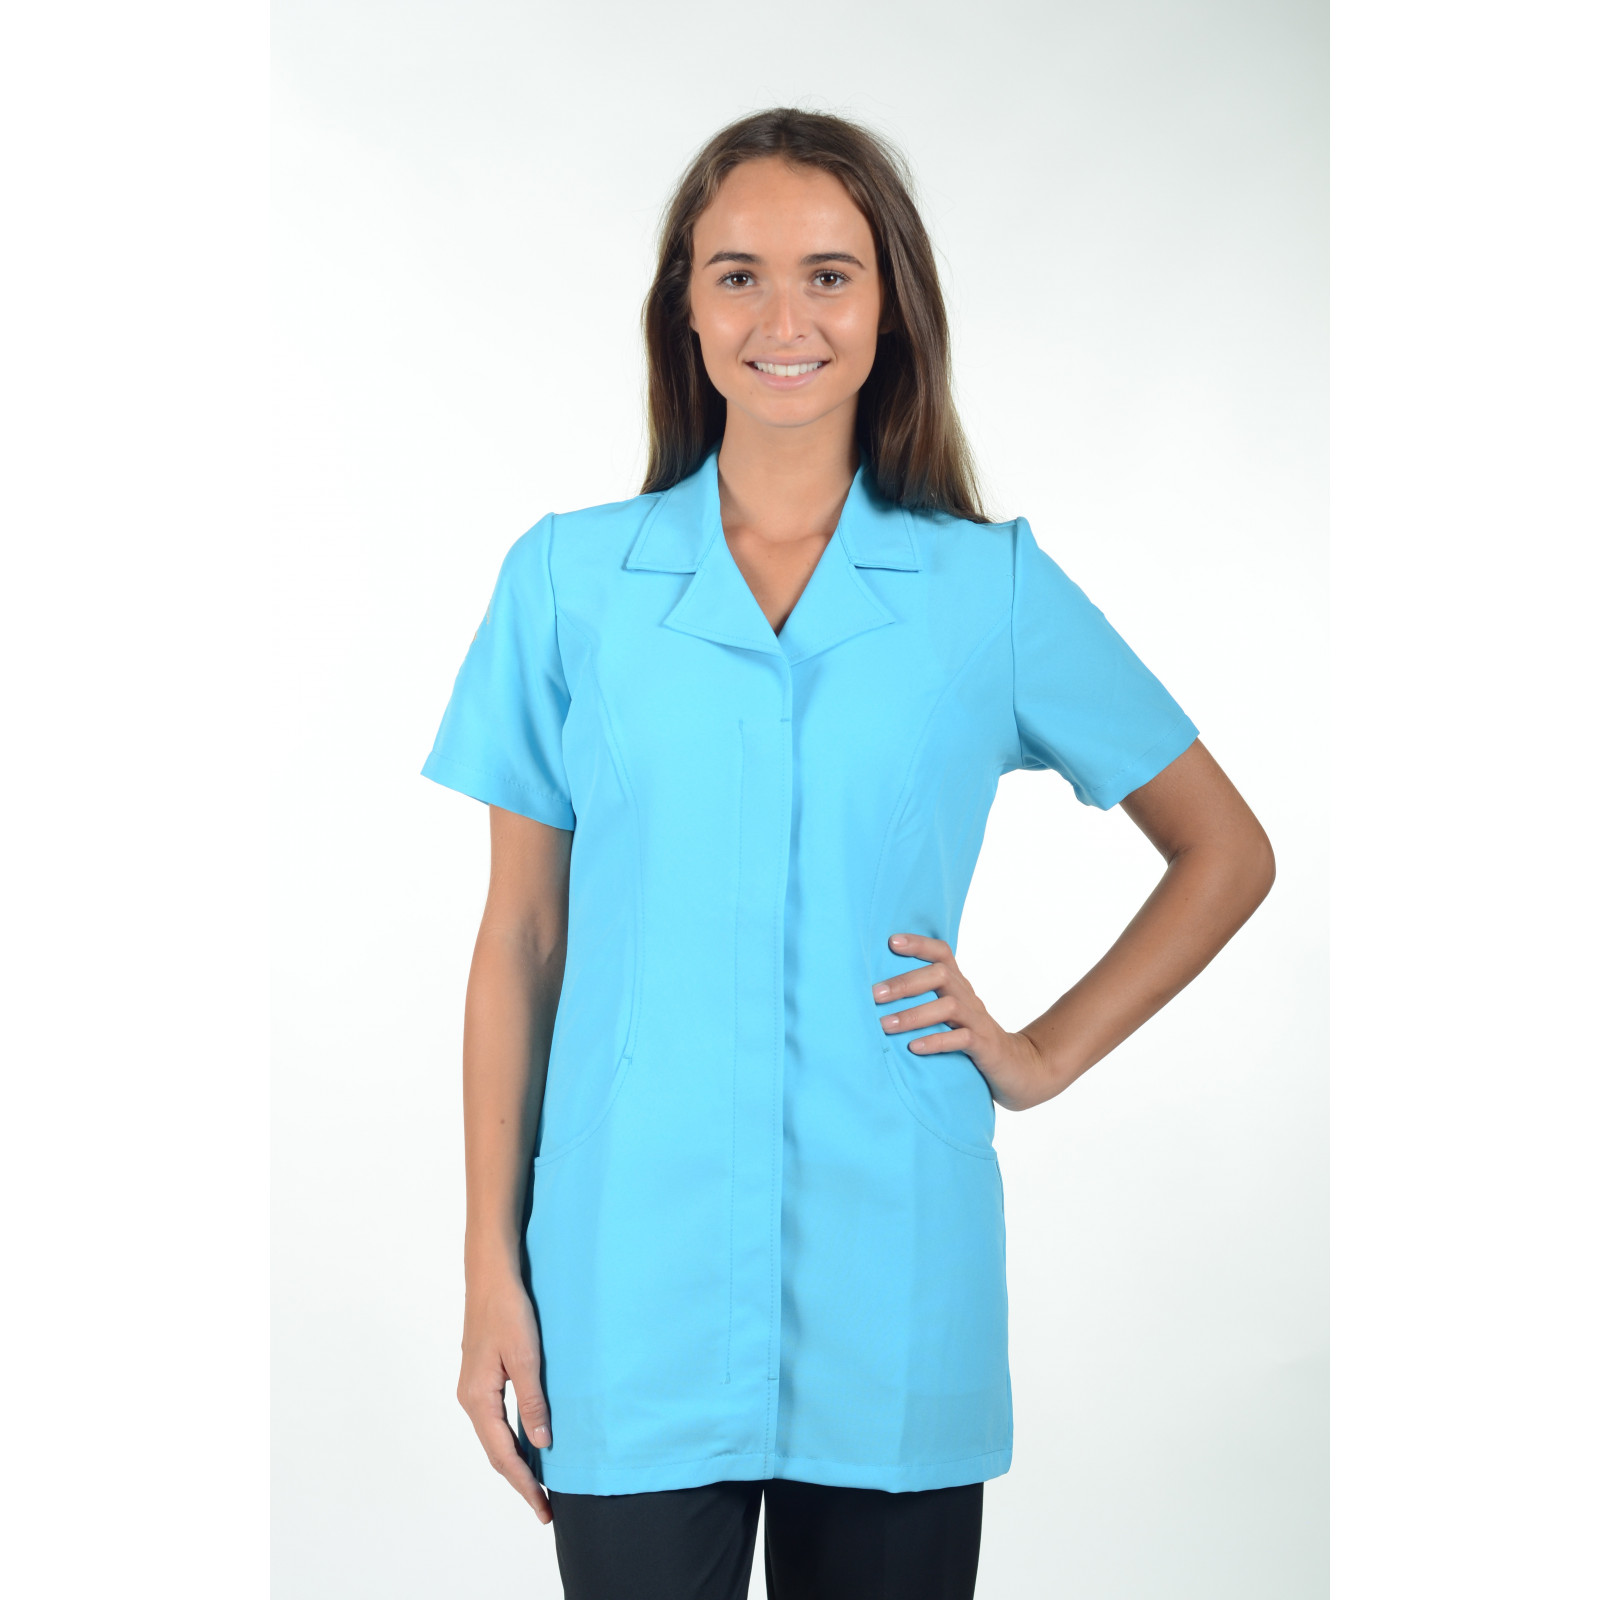 Mirabella Health & Beauty Diona Healthcare Pantalones de uniforme para mujer